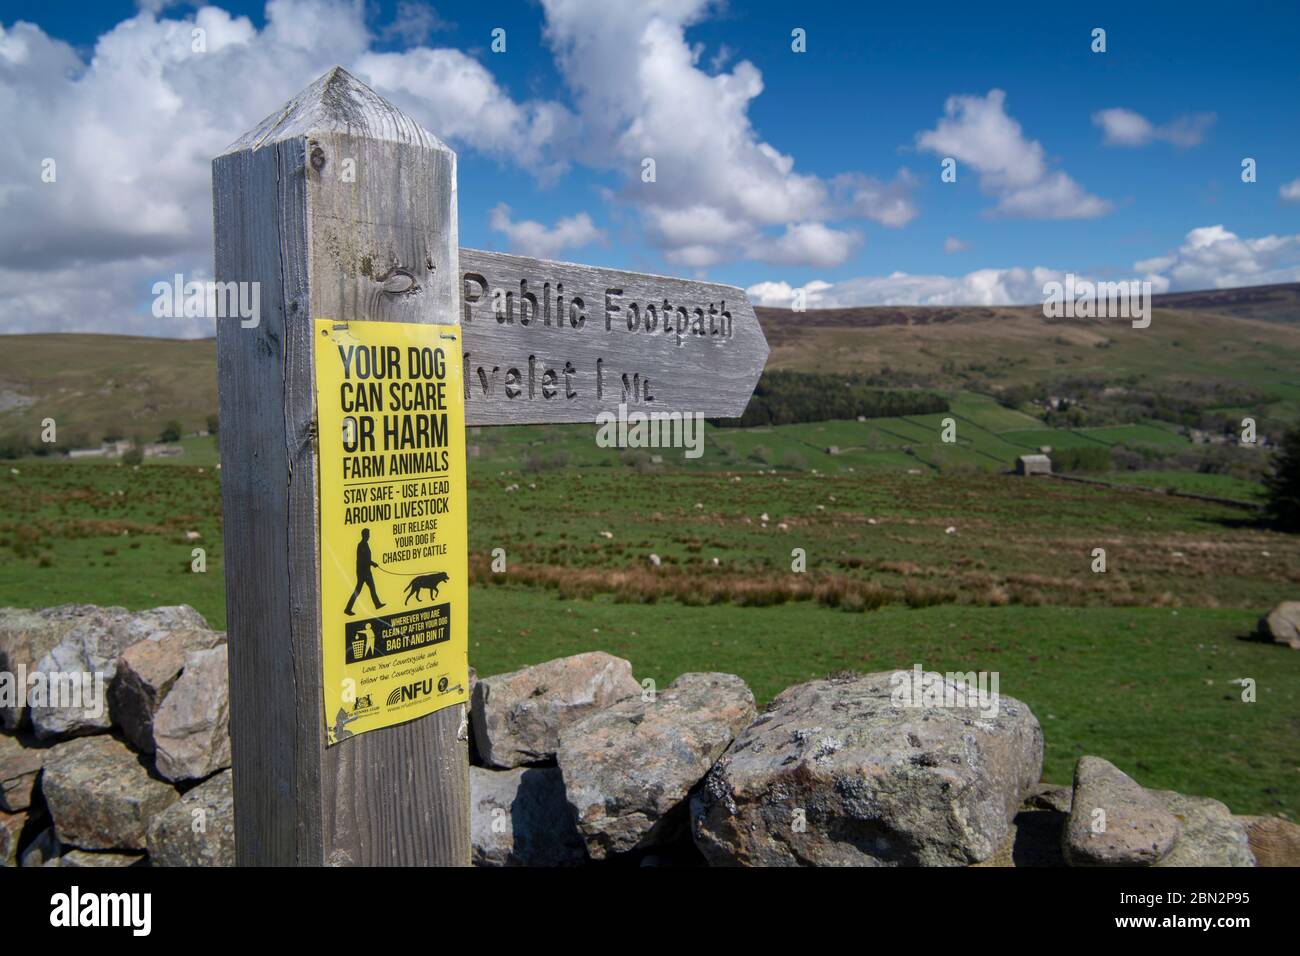 Schild auf einem öffentlichen Fußweg Schild, Warnung vor dem Zulassen Hunde ihrer führt um Vieh. Yorkshire Dales National Park, Großbritannien. Stockfoto